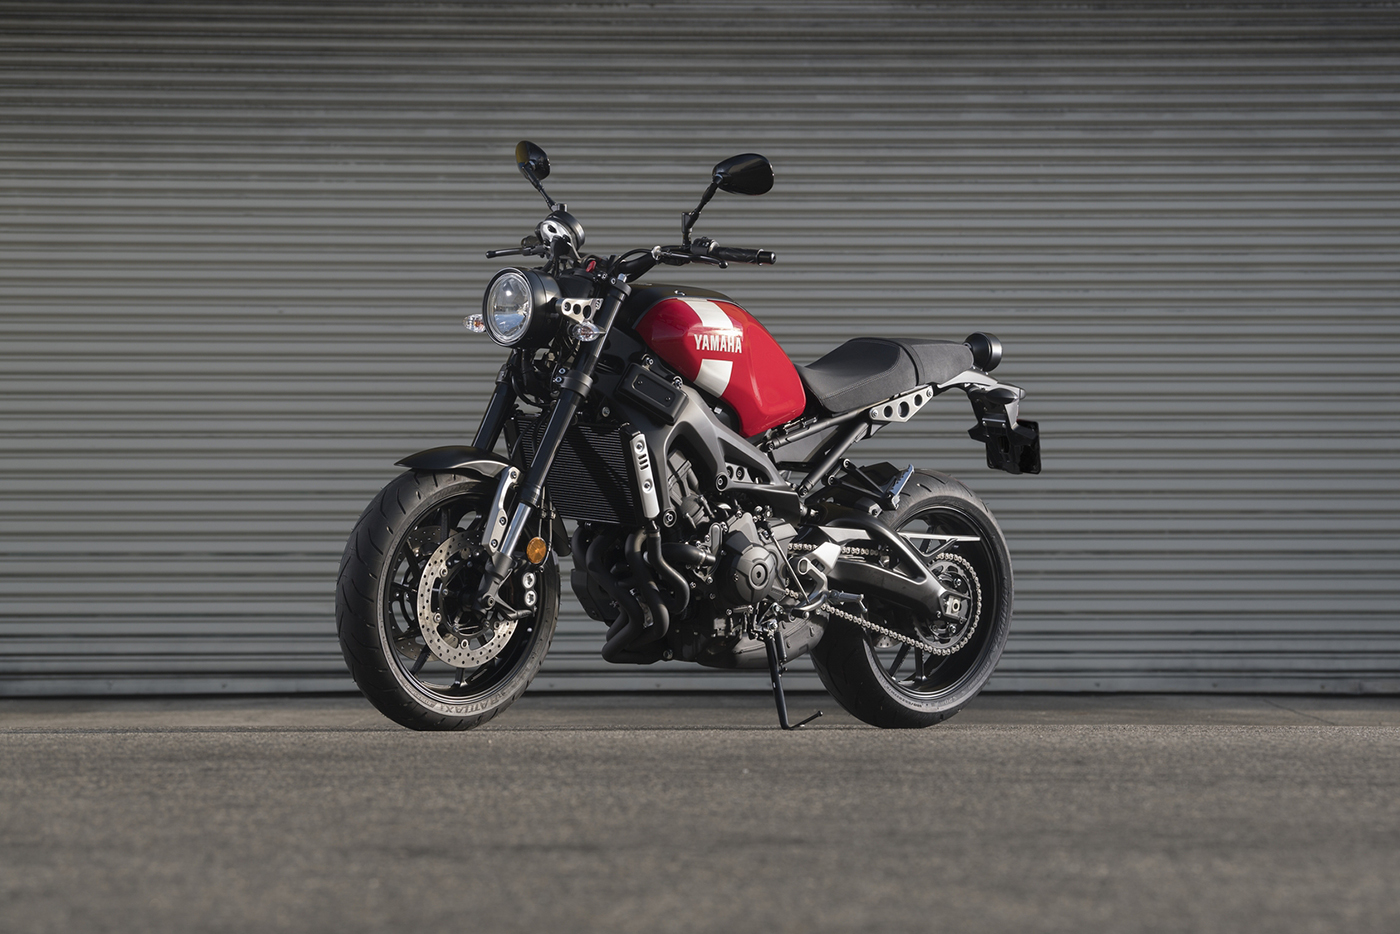 Yamaha XSR900 ABS 2018: Naked-bike cổ điển xen lẫn hiện đại